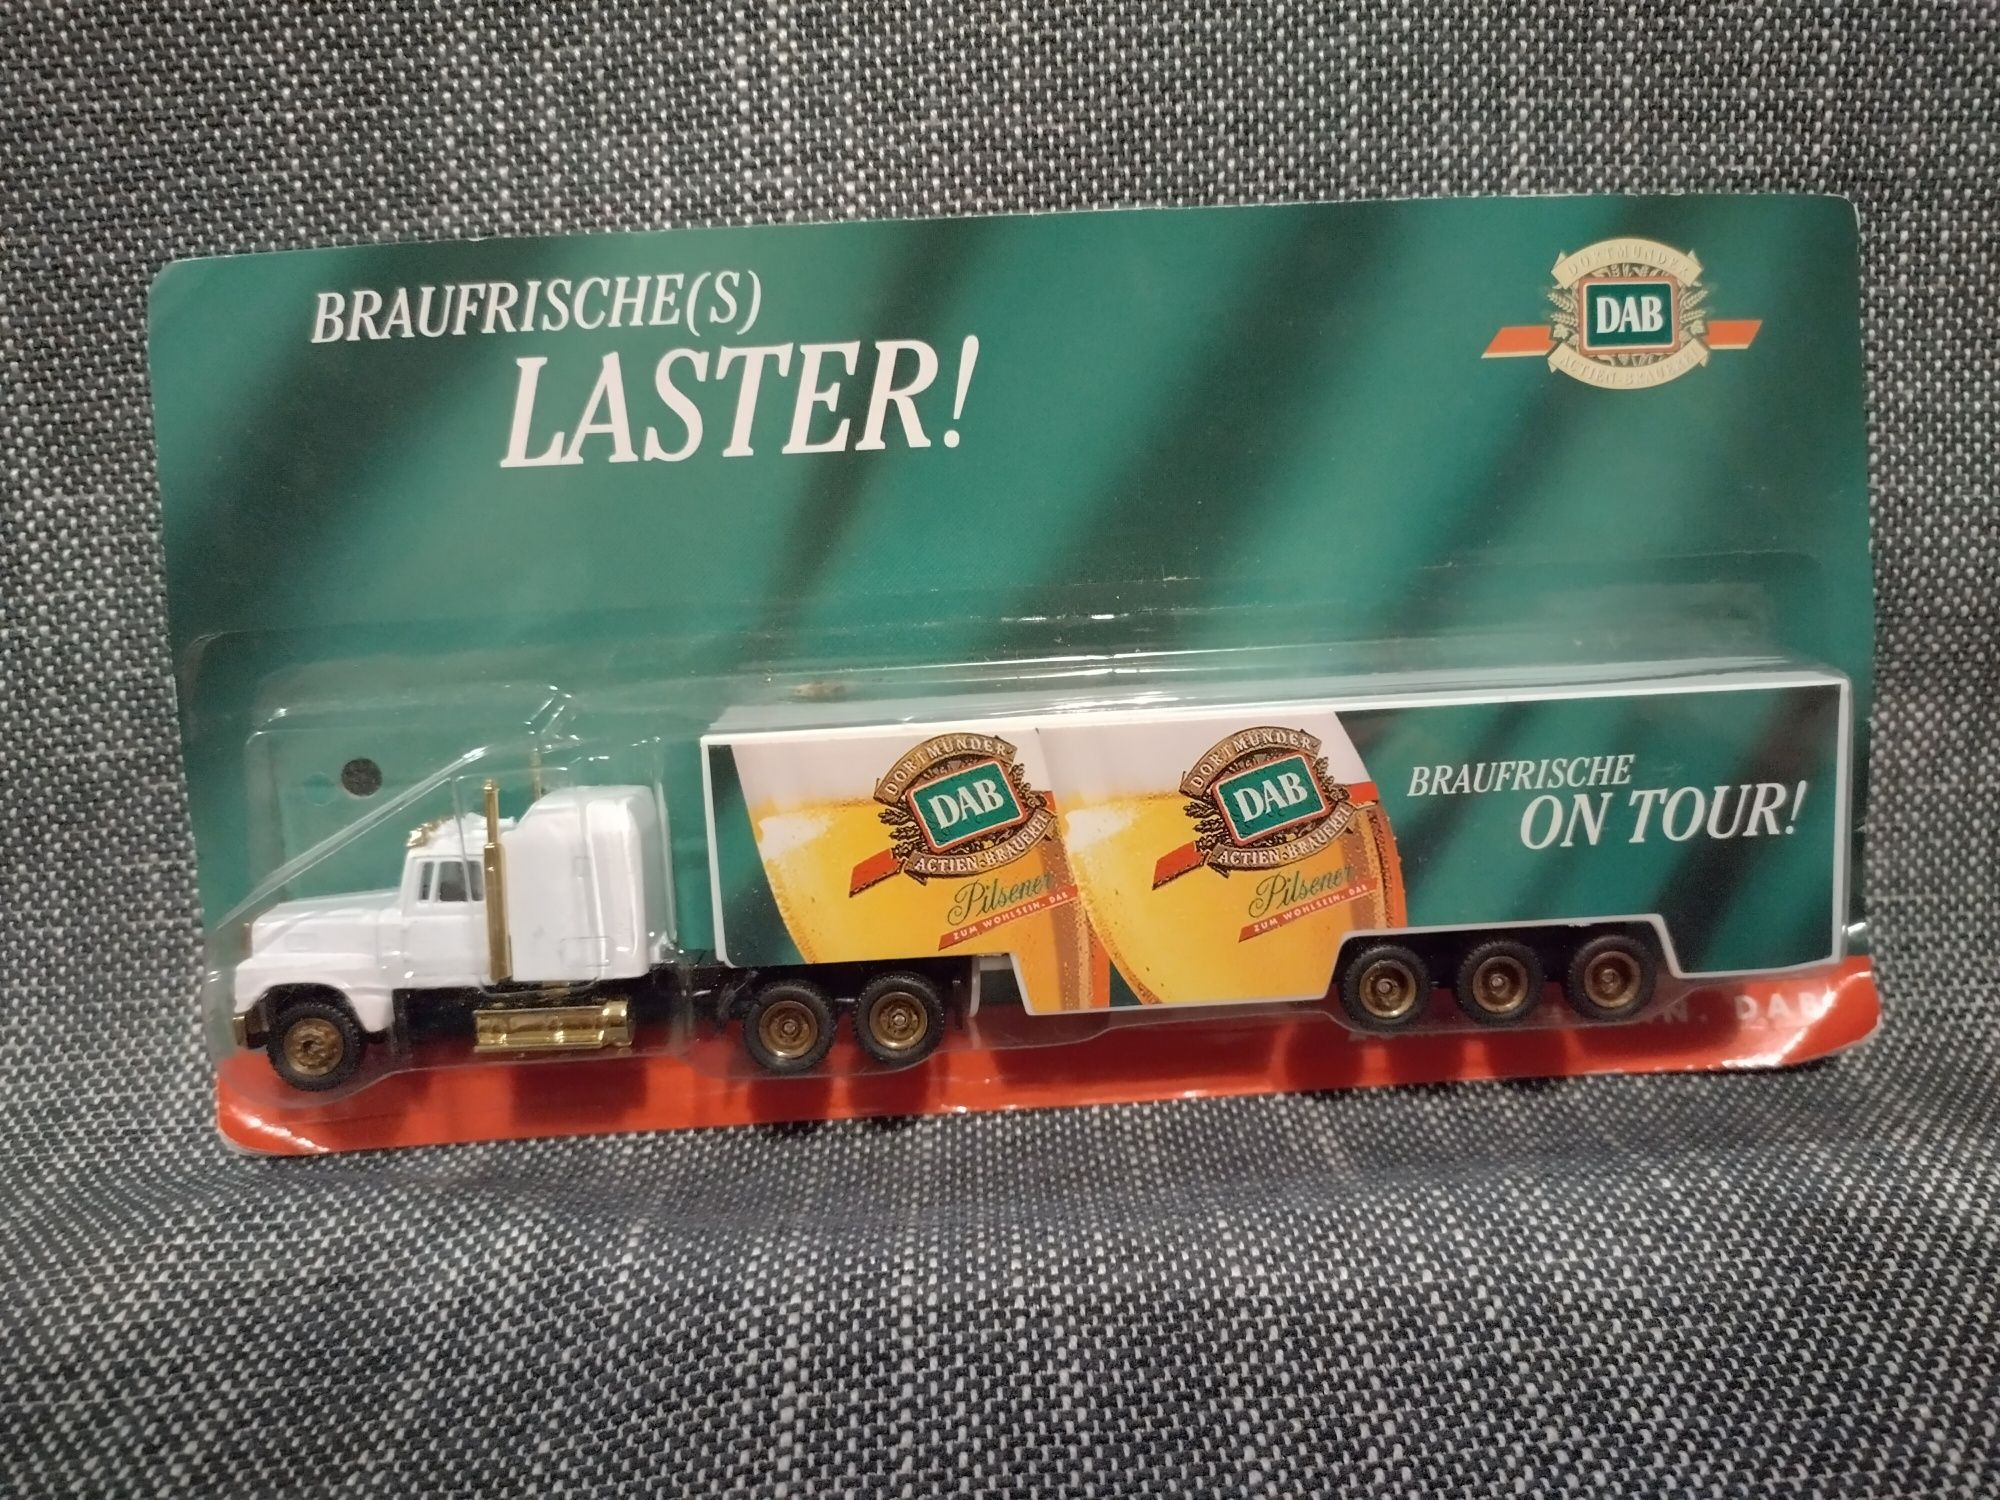 Kolekcijna ciężarówka z reklamą piwa DAB